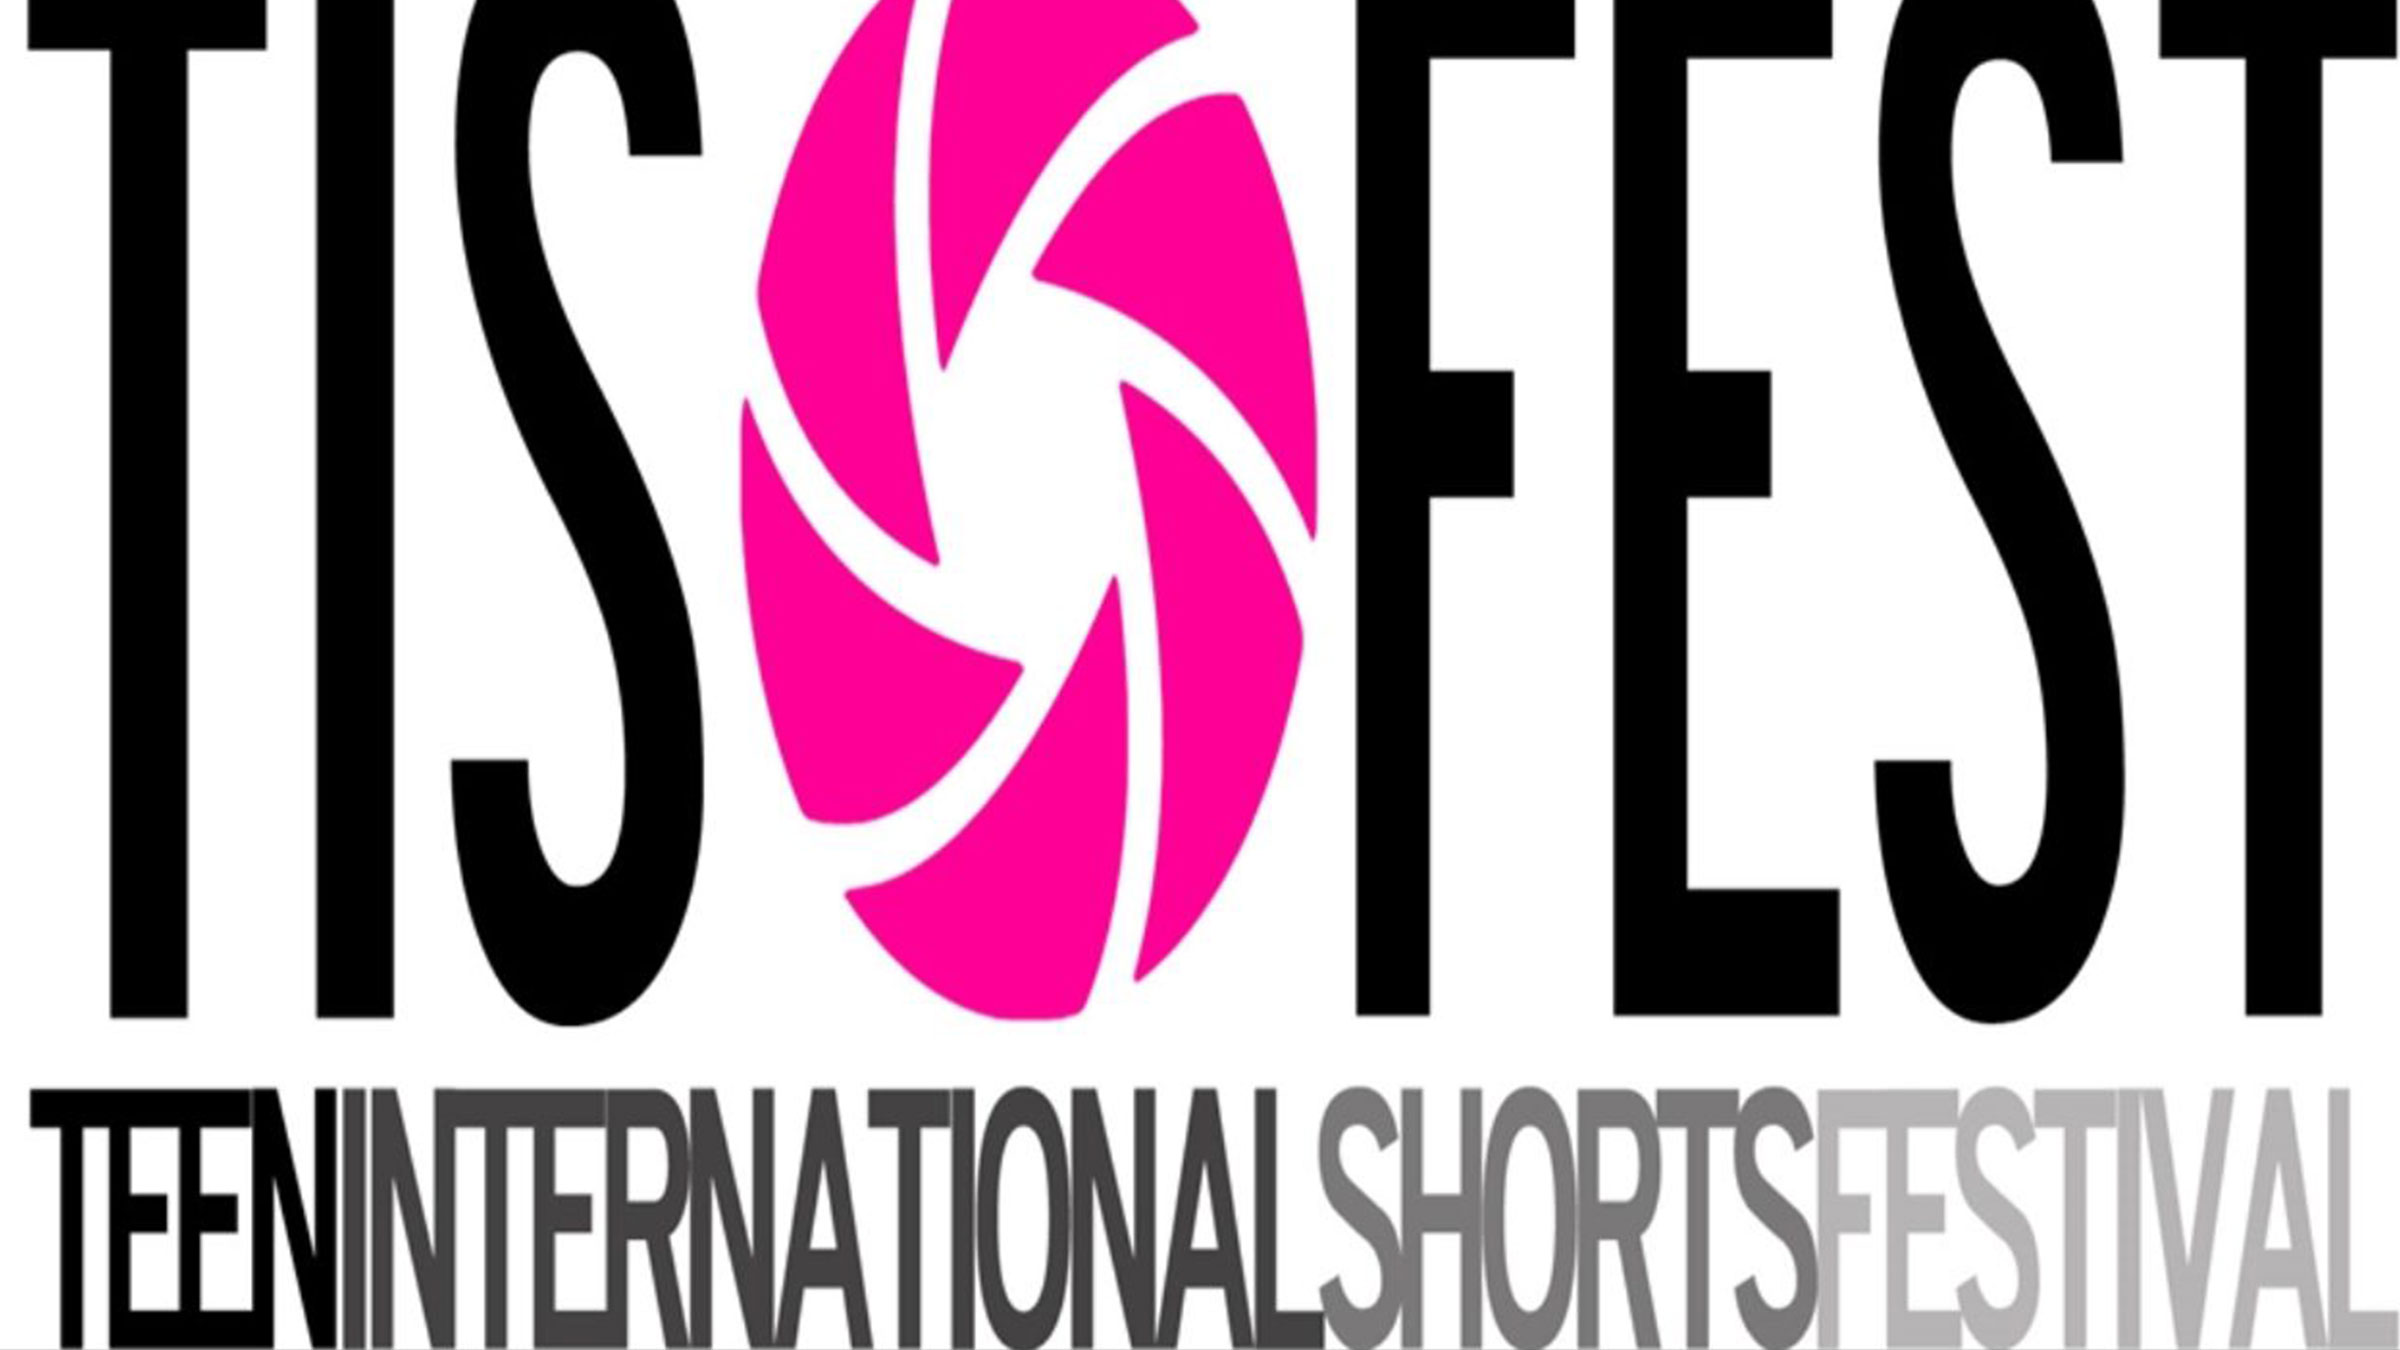 TISFEST<br>Teen International Shorts Festival